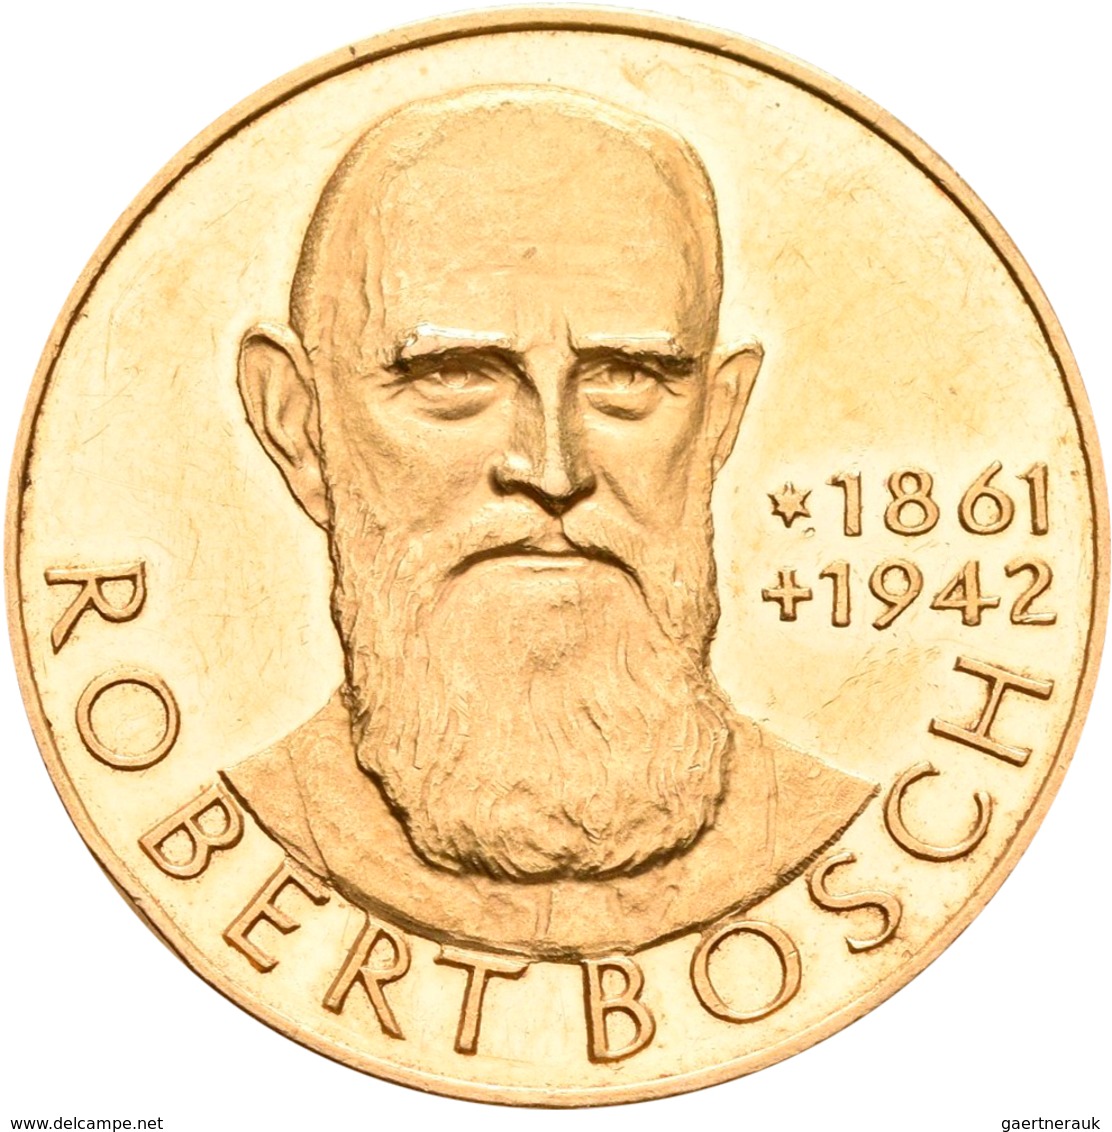 Medaillen Deutschland: Goldmedaillen-Lot 5 Stück; Robert Bosch, Gold 900/1000, 25 mm, 14 g / Urach,